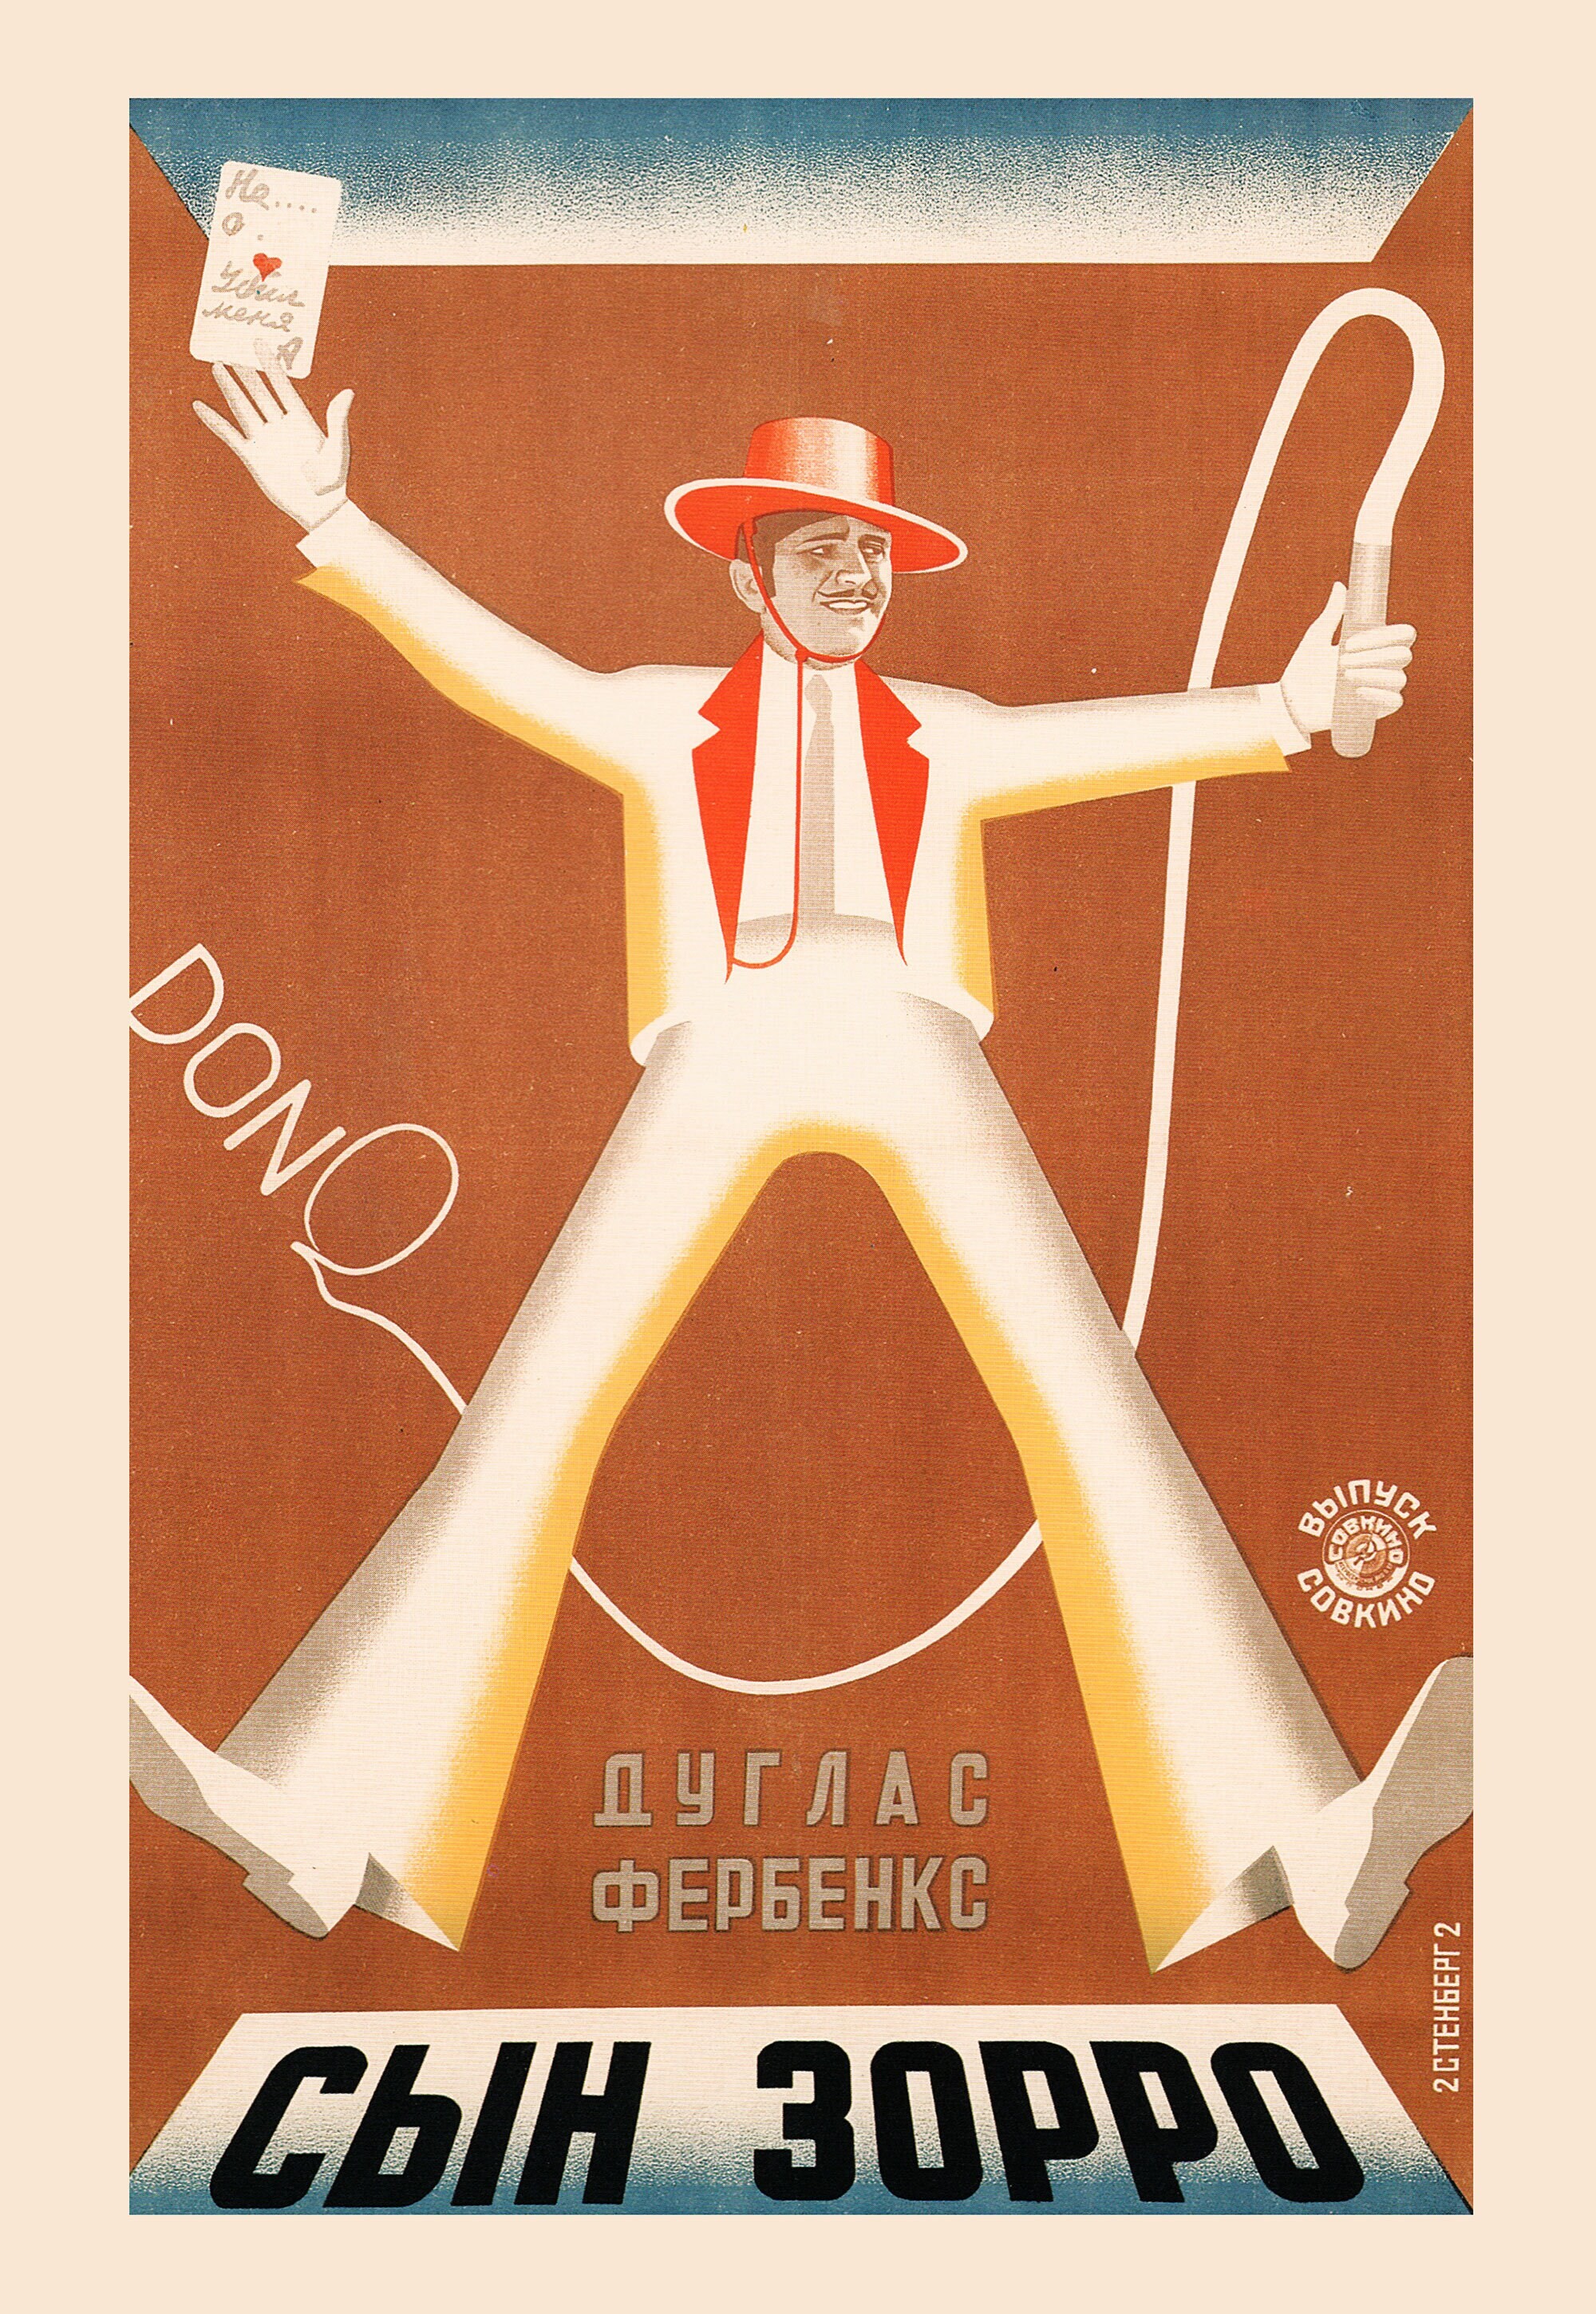 Сын Зорро (Дон Ку сын Зорро), 1925 год, режиссёр Дональд Крисп, плакат к фильму, авторы Владимир и Георгий Стенберги (авангардное советское искусство, 1920-е)